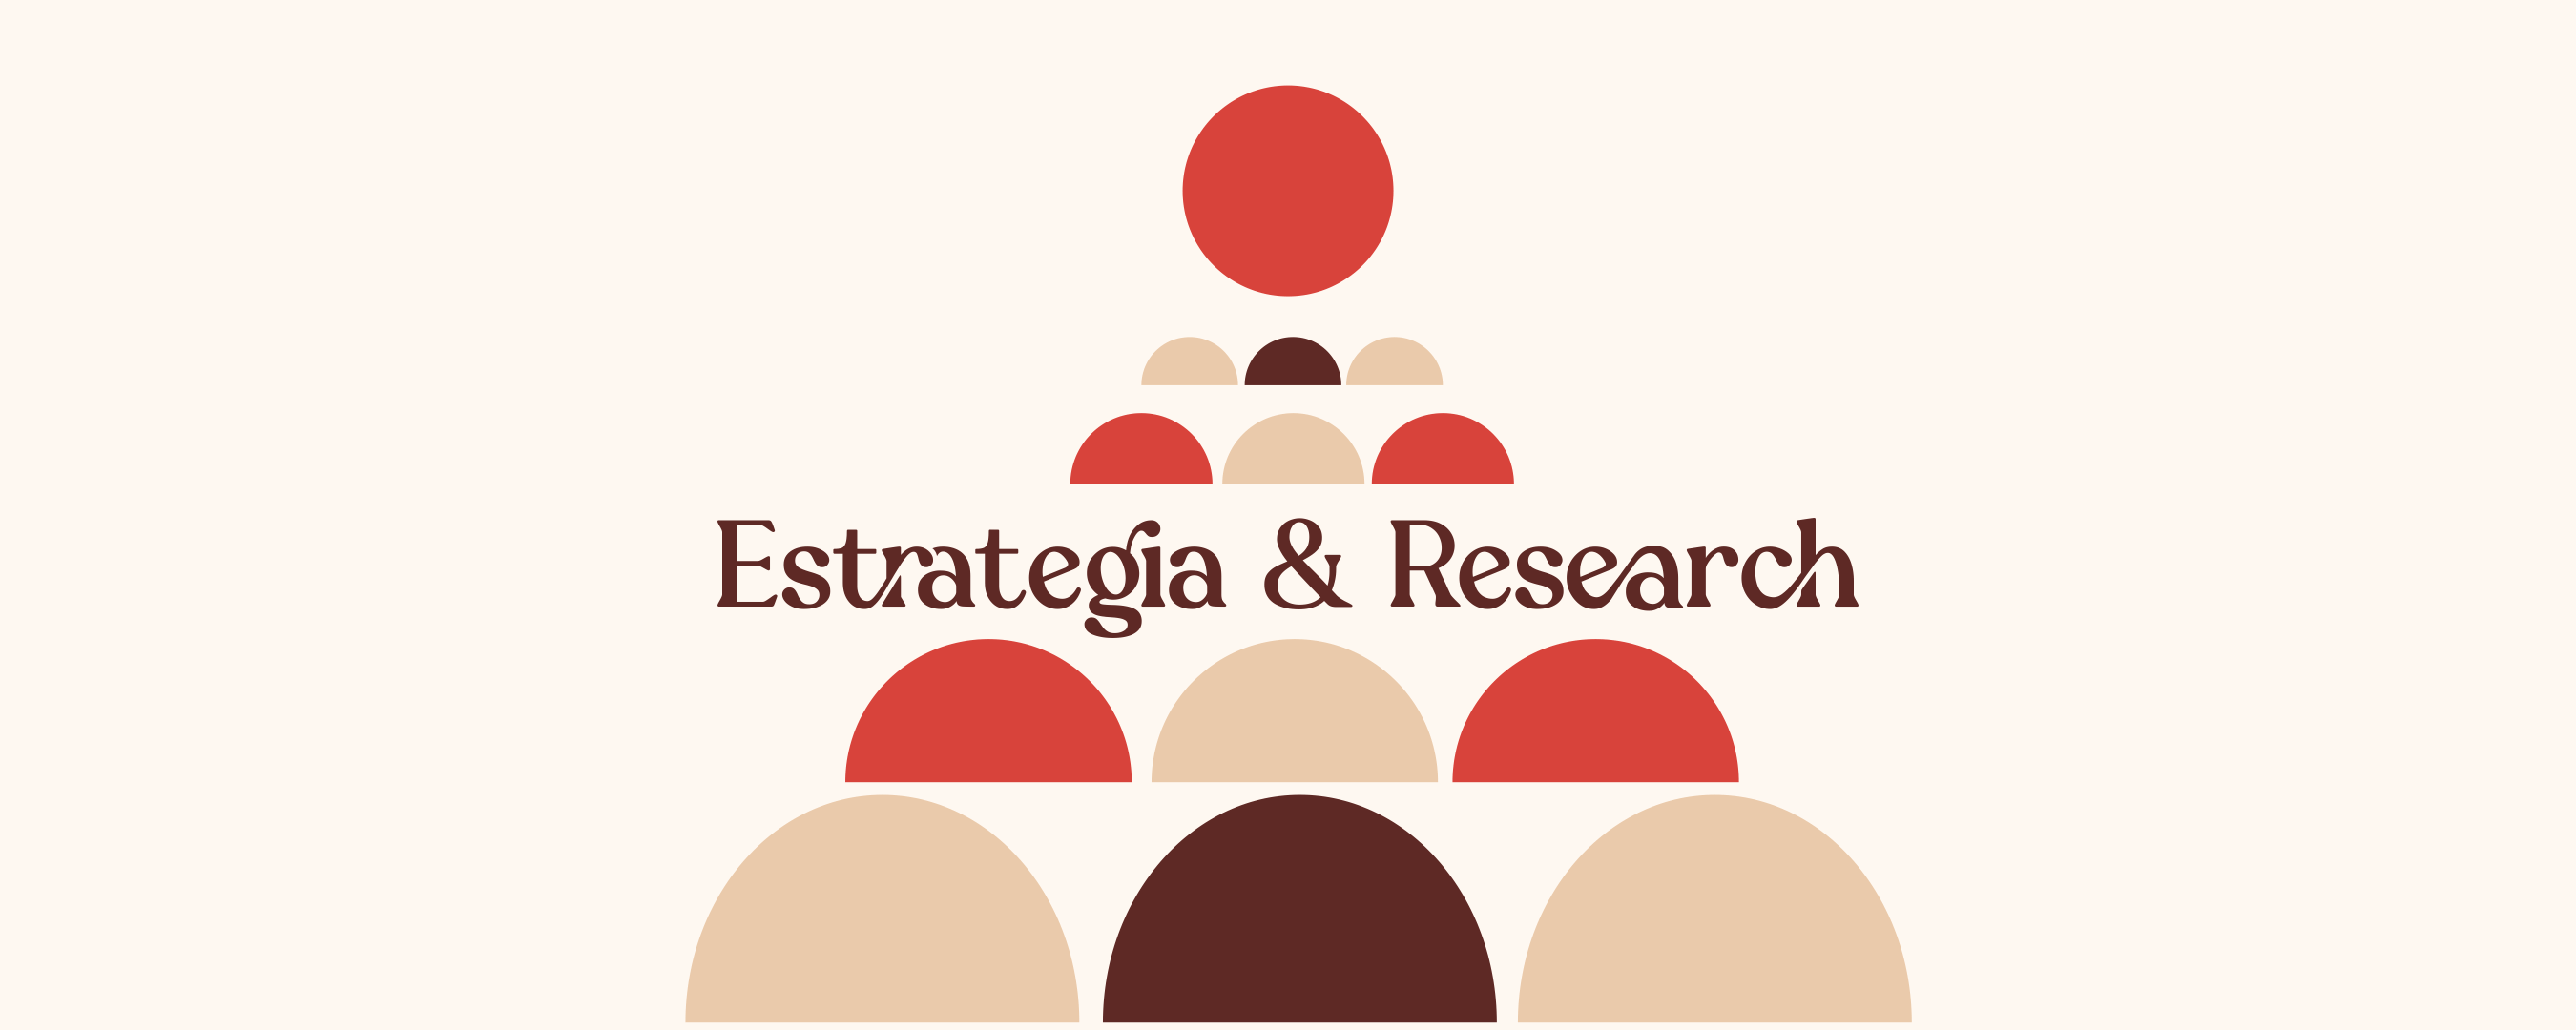 Marketing Estrategia Digital Serdivergente Investigación